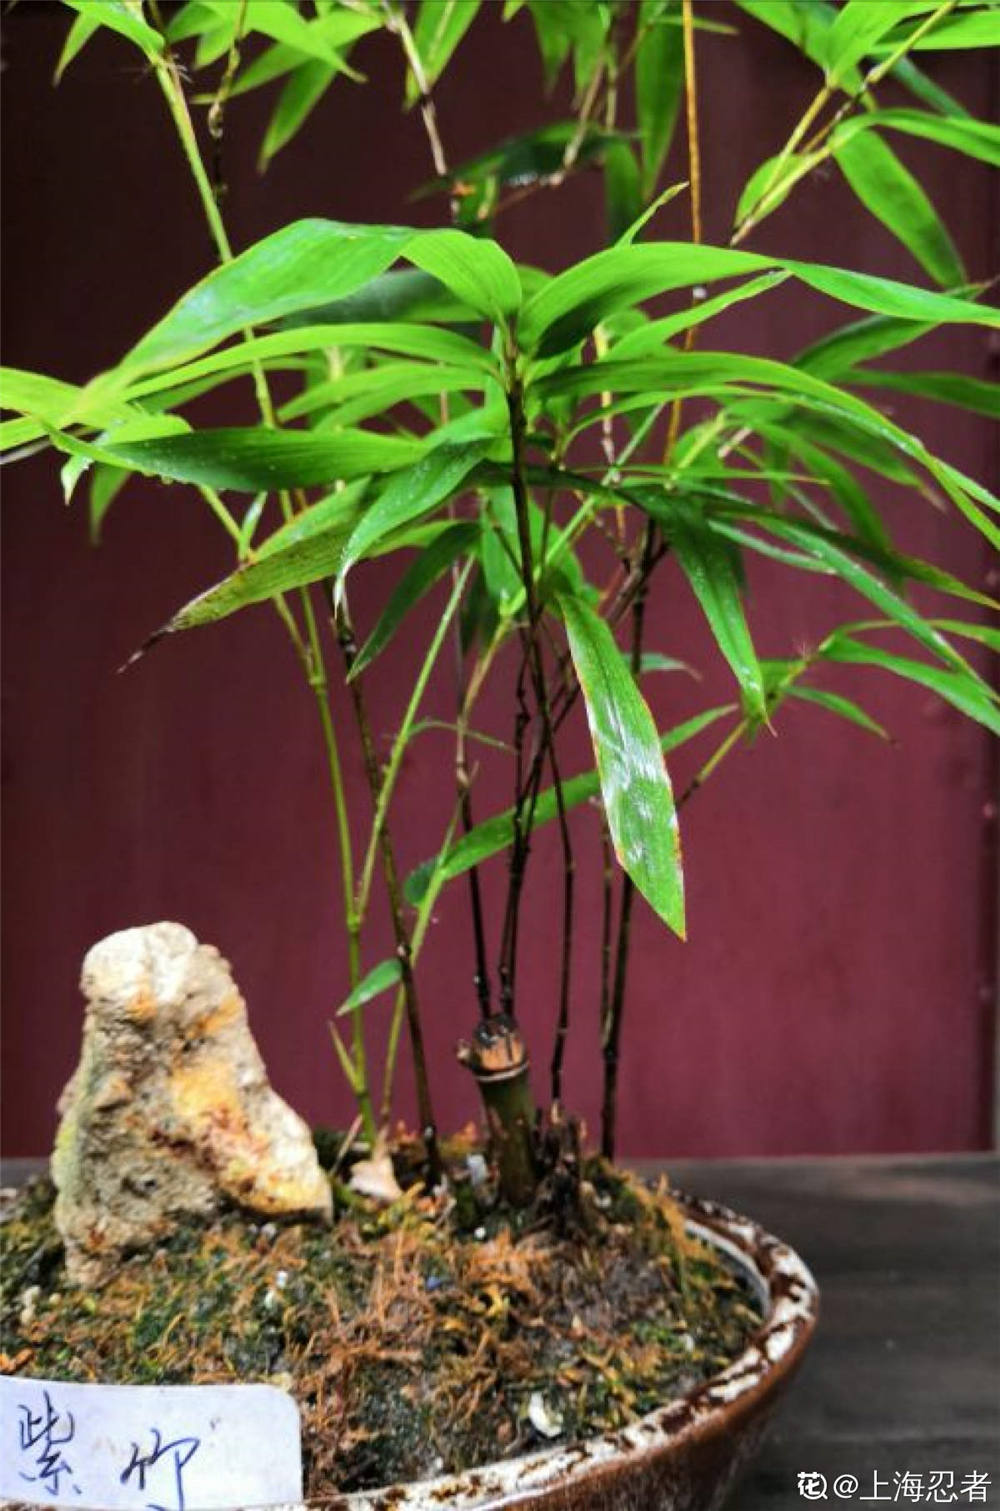 紫竹盆栽的图片大全图片